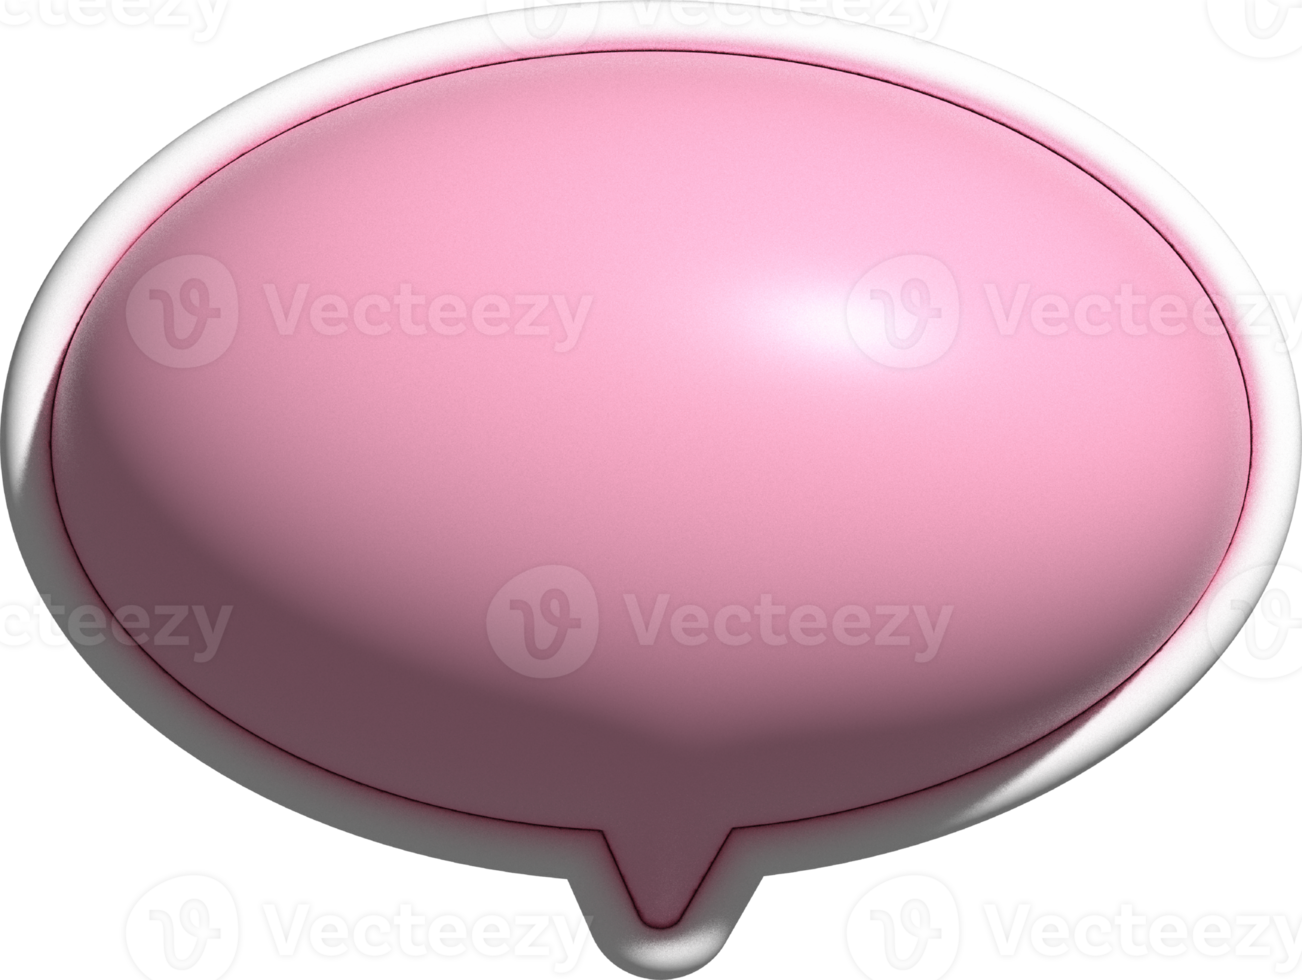 lindo cuadro de texto rosa 3d, decoración de cuadro de burbujas de discurso png